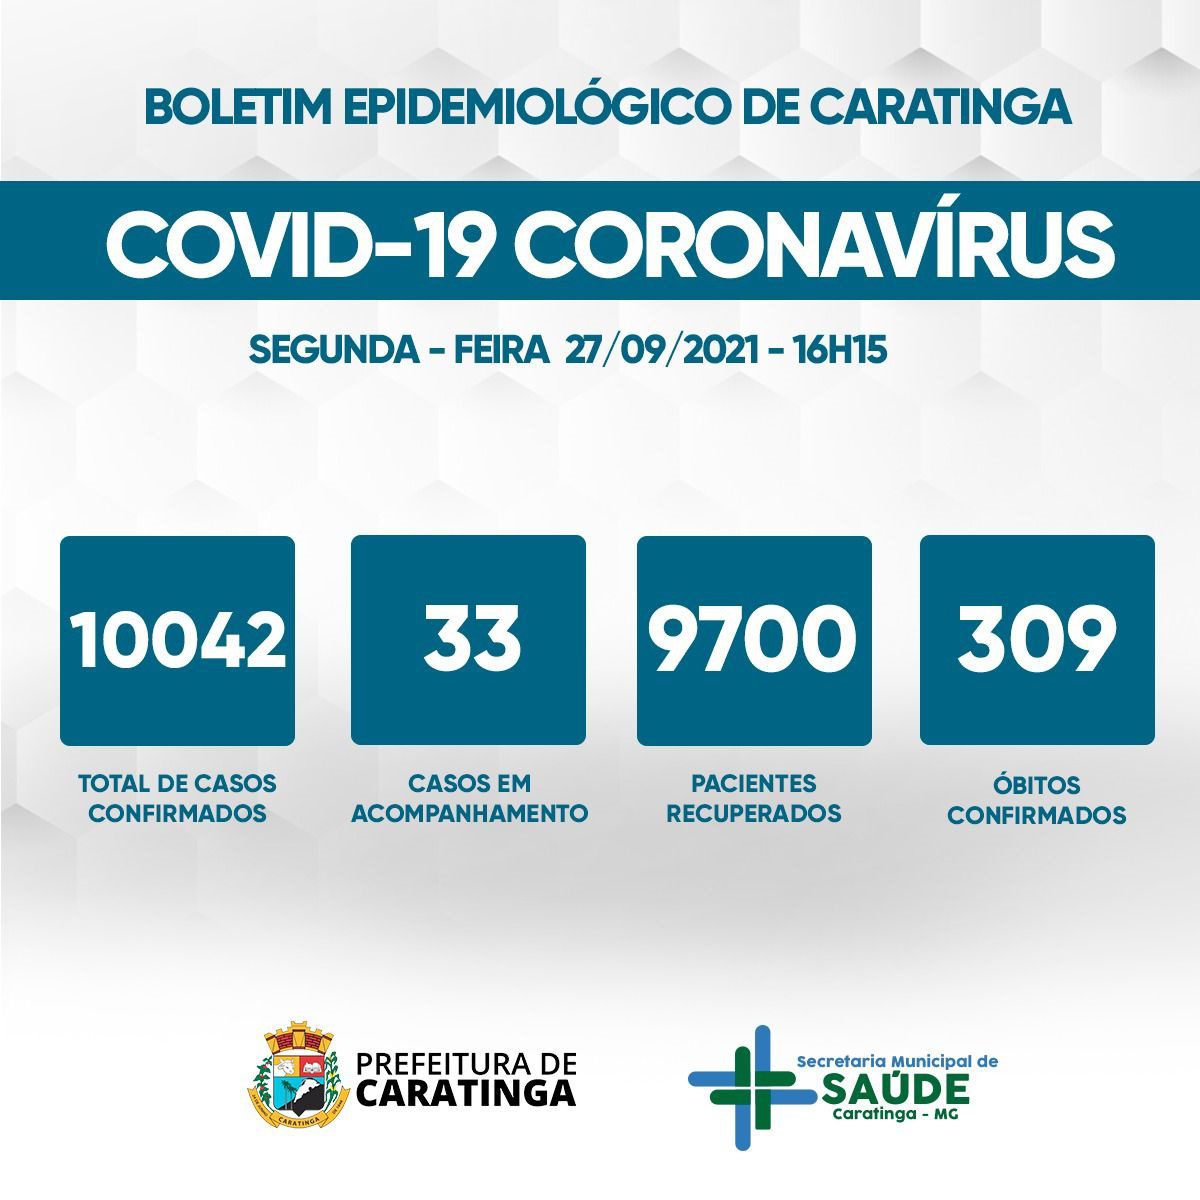 Covid-19: 33 casos em acompanhamento e 309° óbito